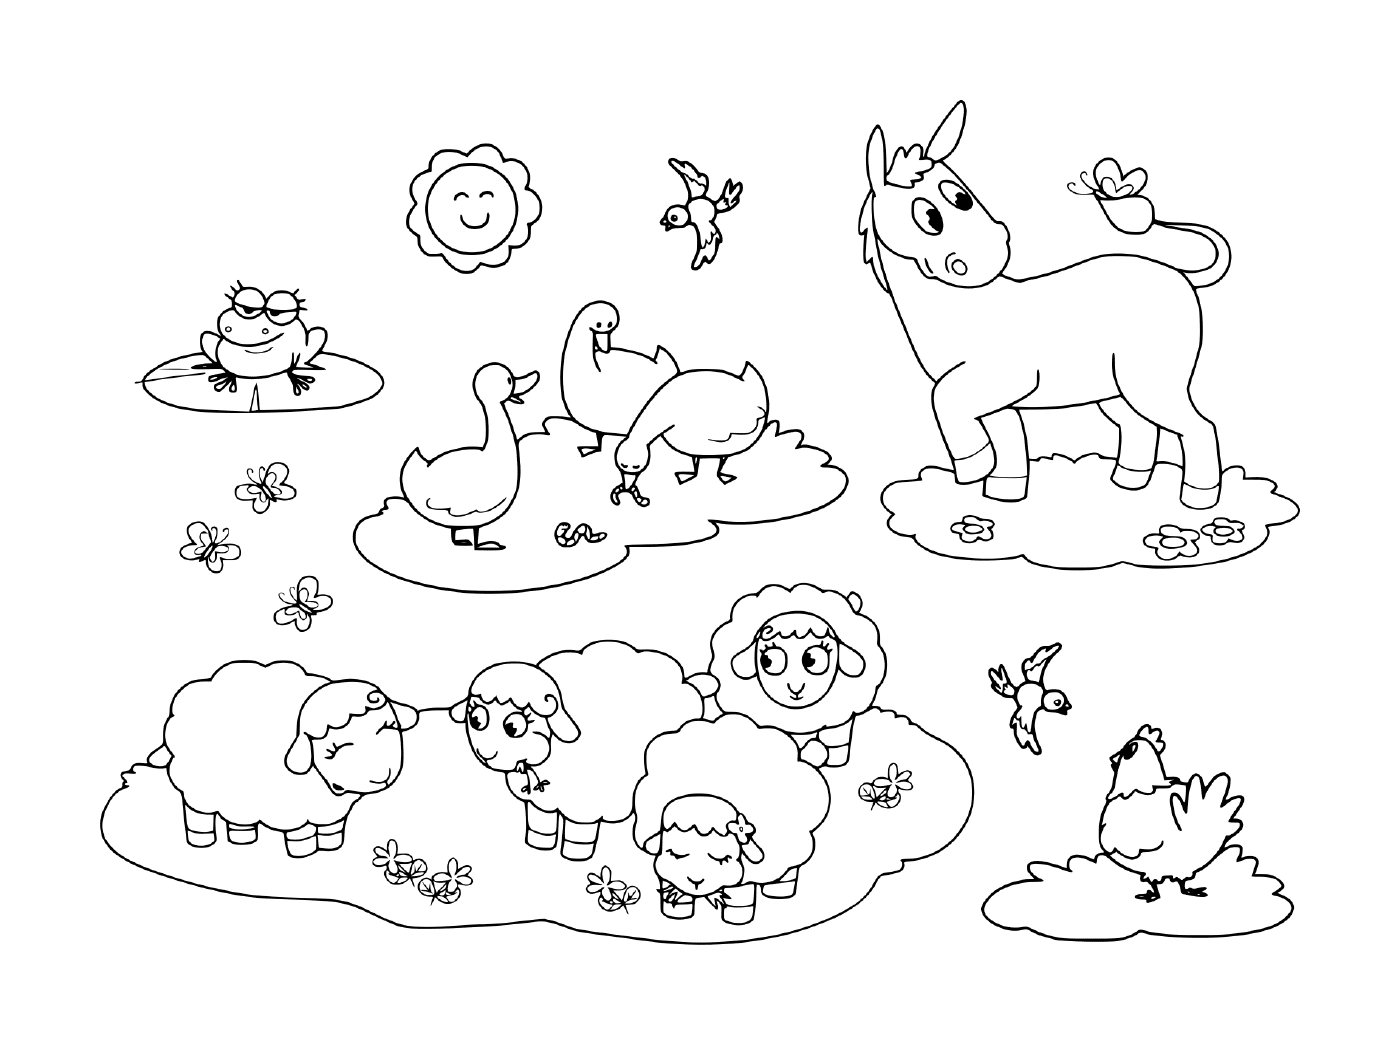  un grupo de animales en la hierba, incluyendo un burro, un ganso, una gallina, ovejas y una rana 